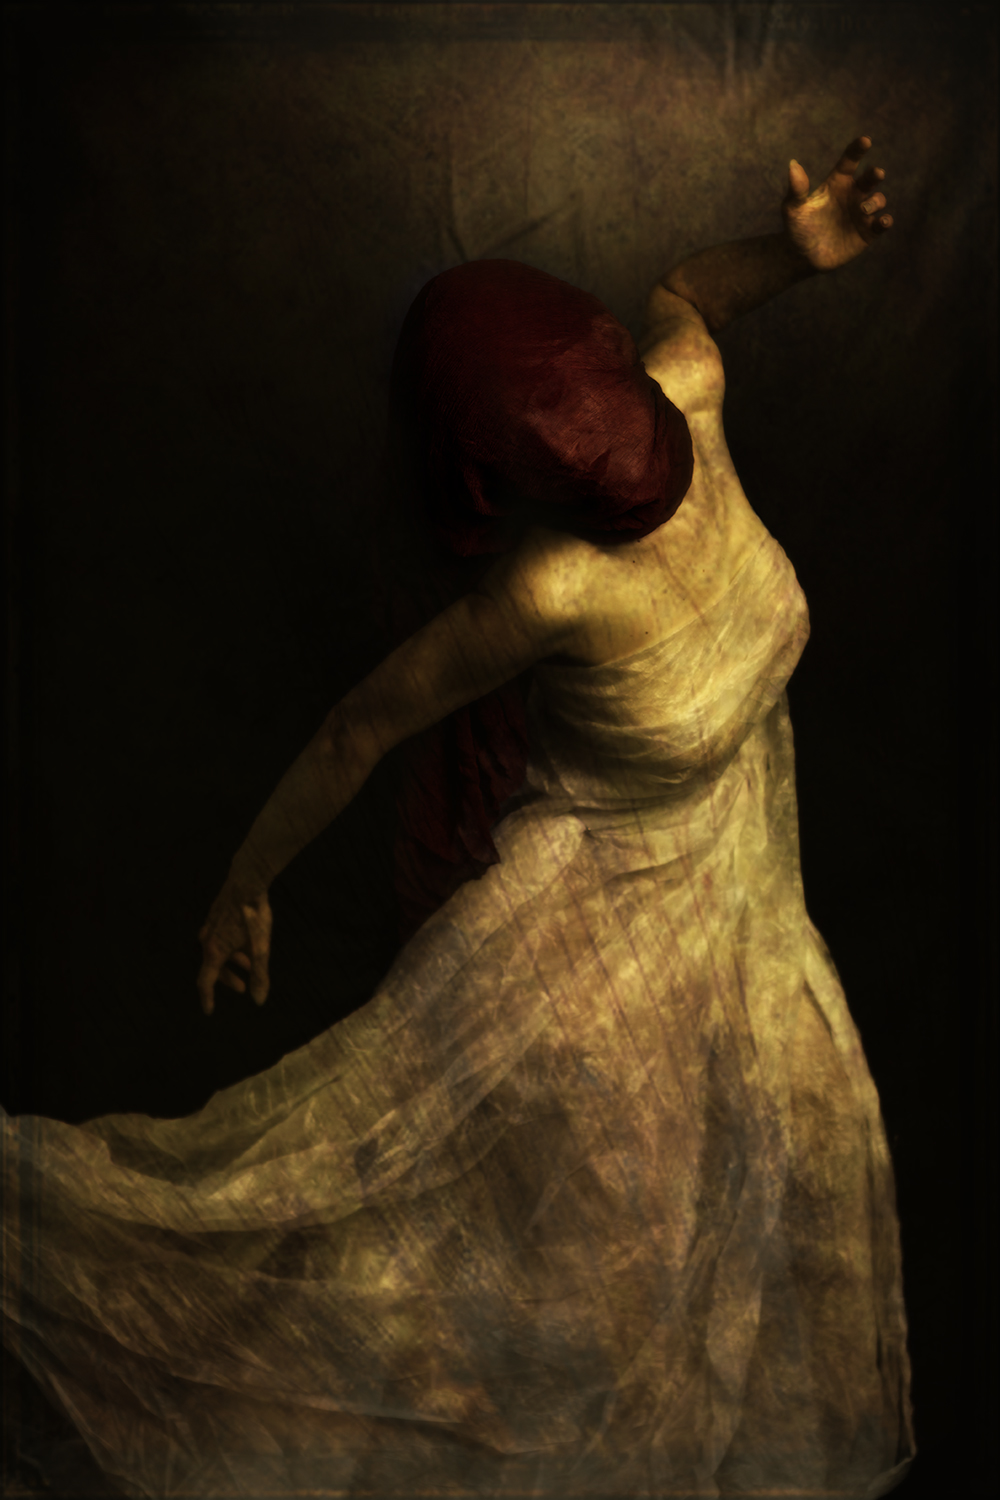 Les ames mortes,Adelaide Rubens,travail photographique,Univers sombre